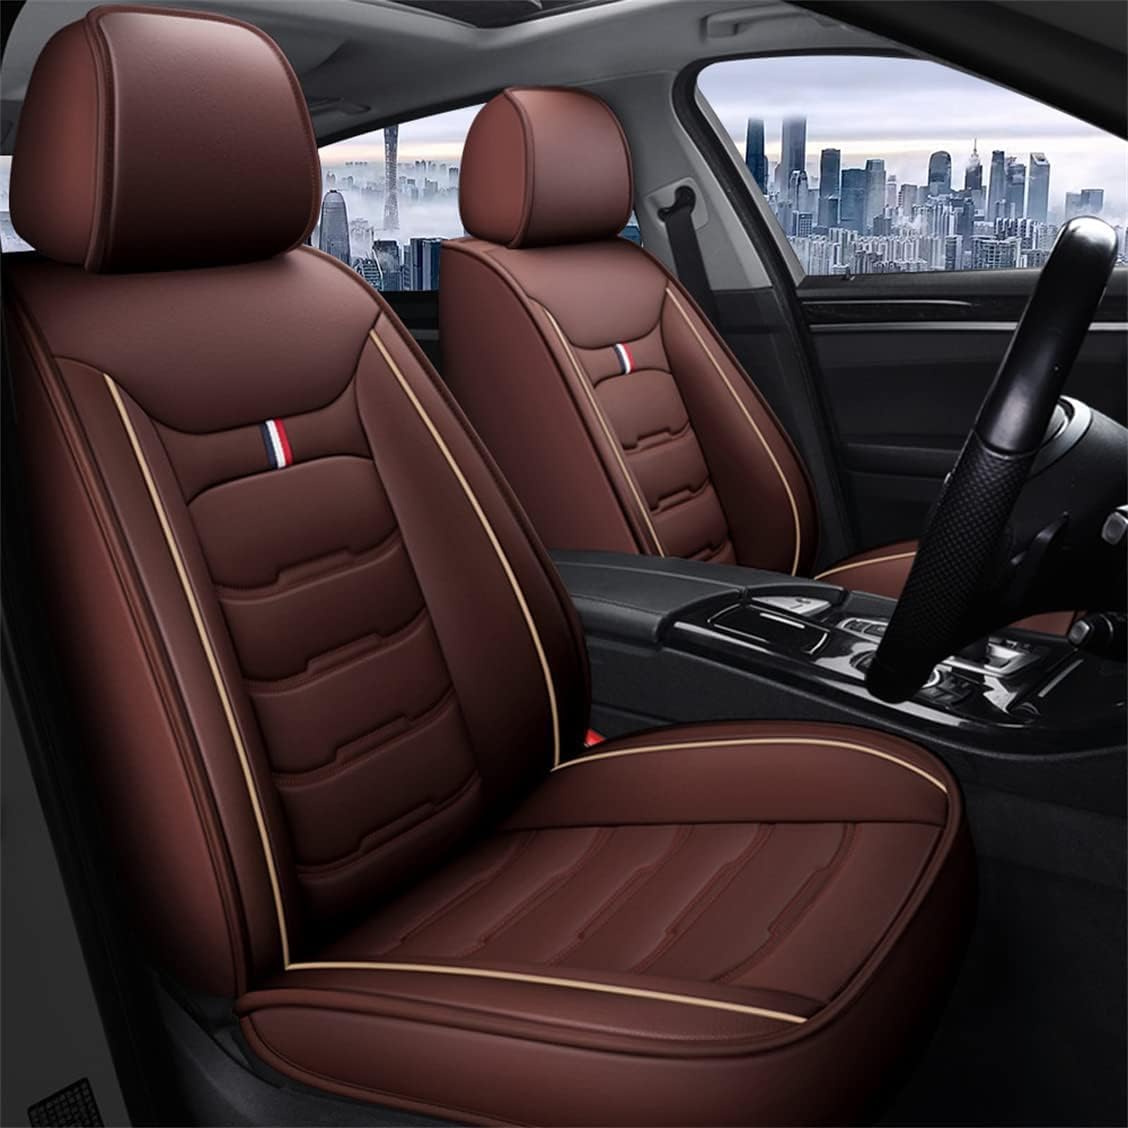 SPEL3LQQ Auto Sitzbezügesets für Chrysler Voyager, atmungsaktiv und leicht zu reinigen wasserdichte Autositzschoner,Coffee von SPEL3LQQ